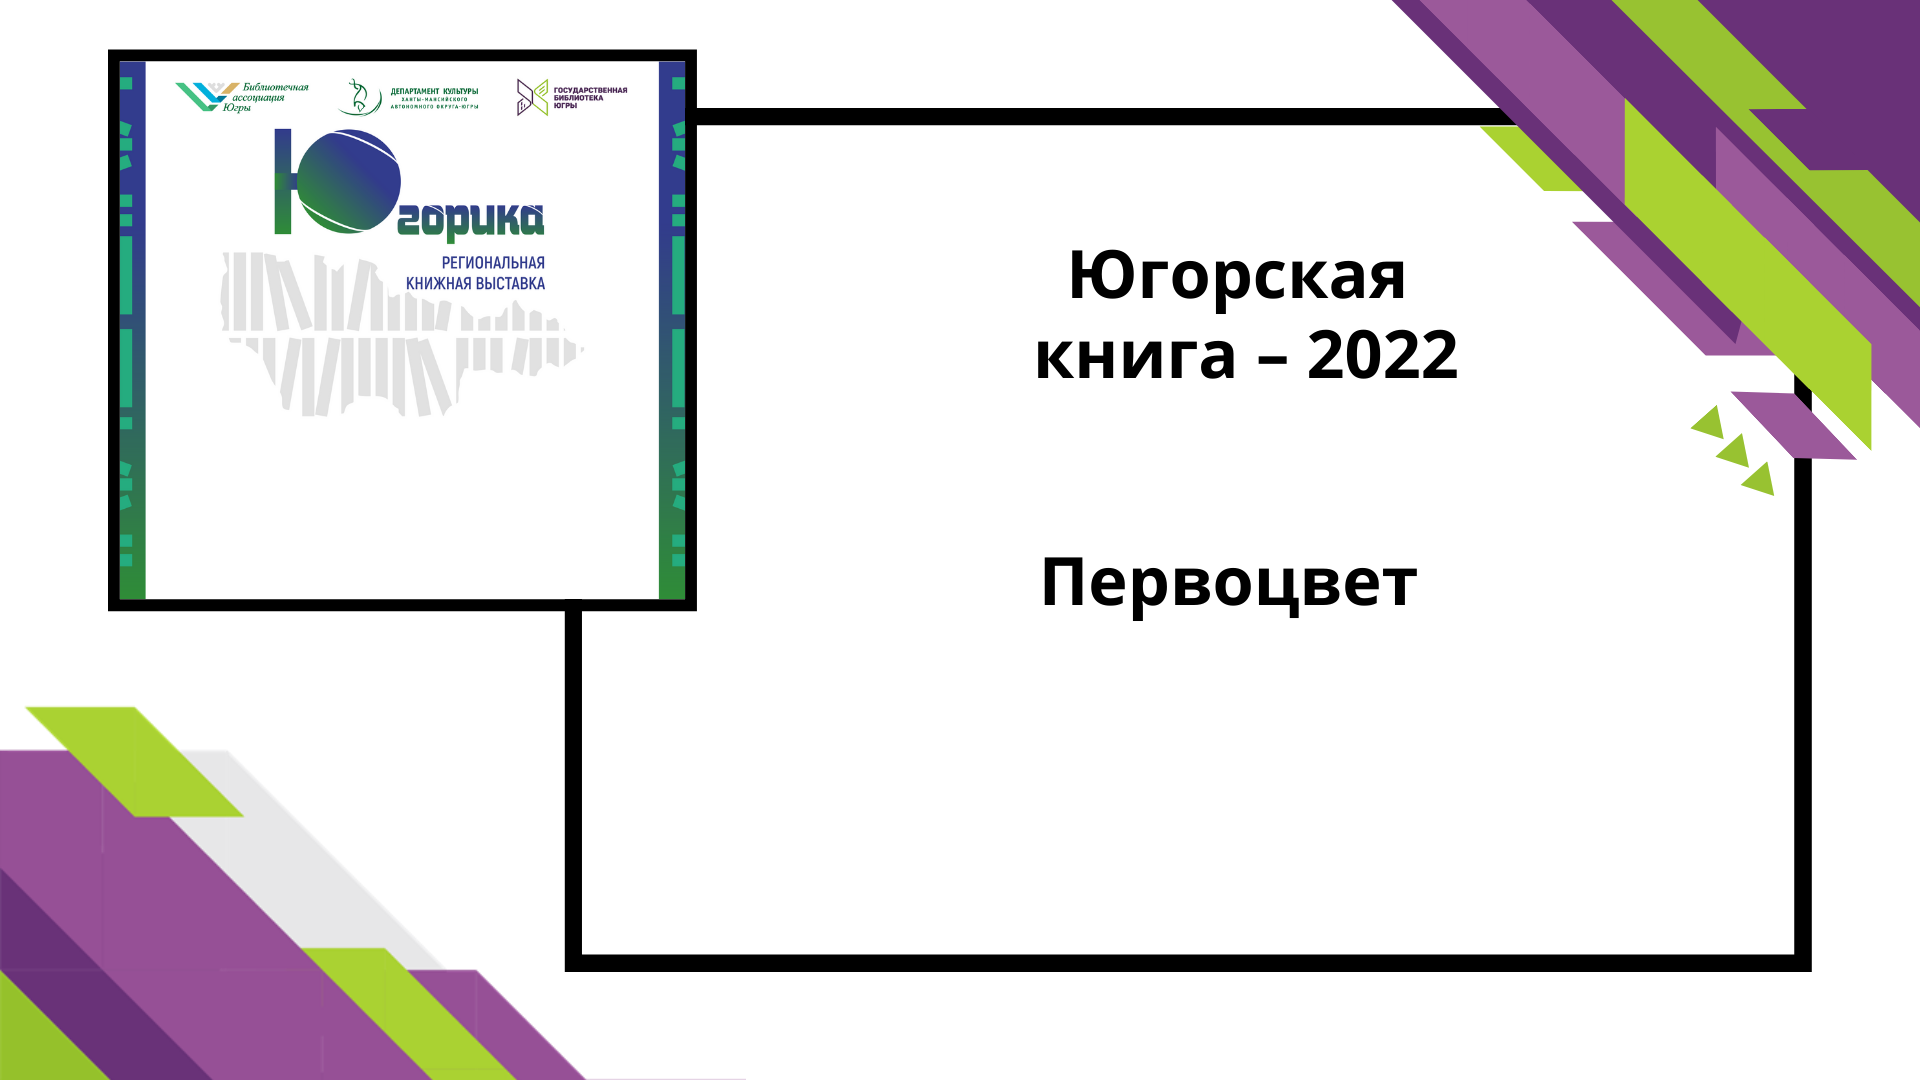 Югорская книга-2022 Первоцвет.mp4